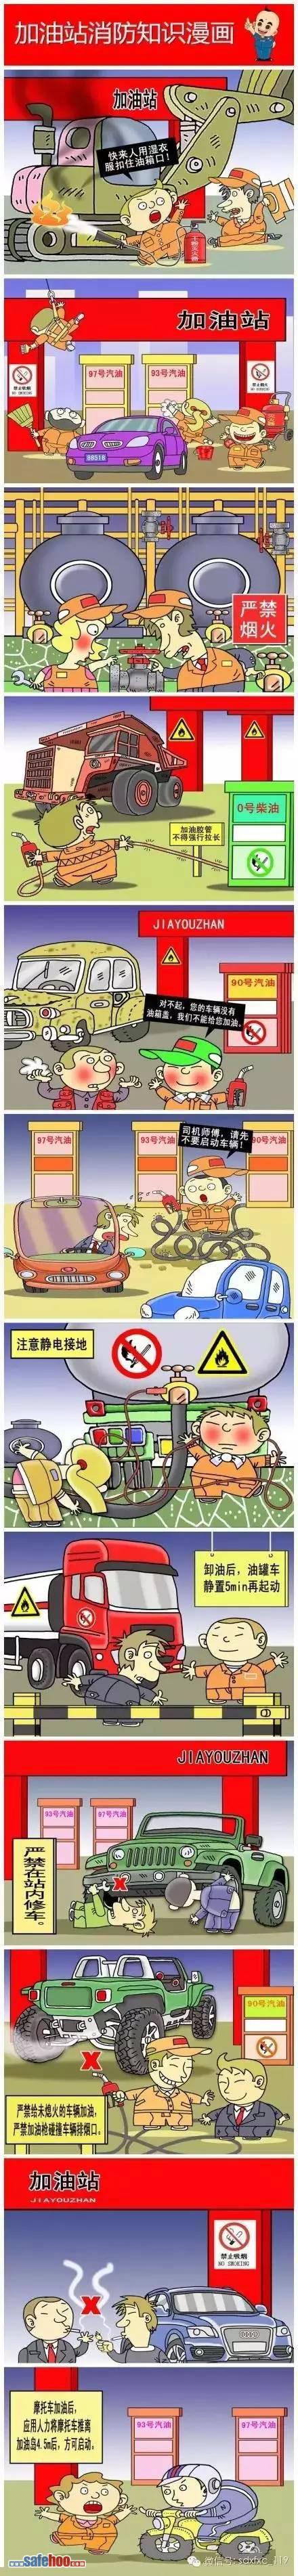 加油站消防betway必威官方网站
漫画